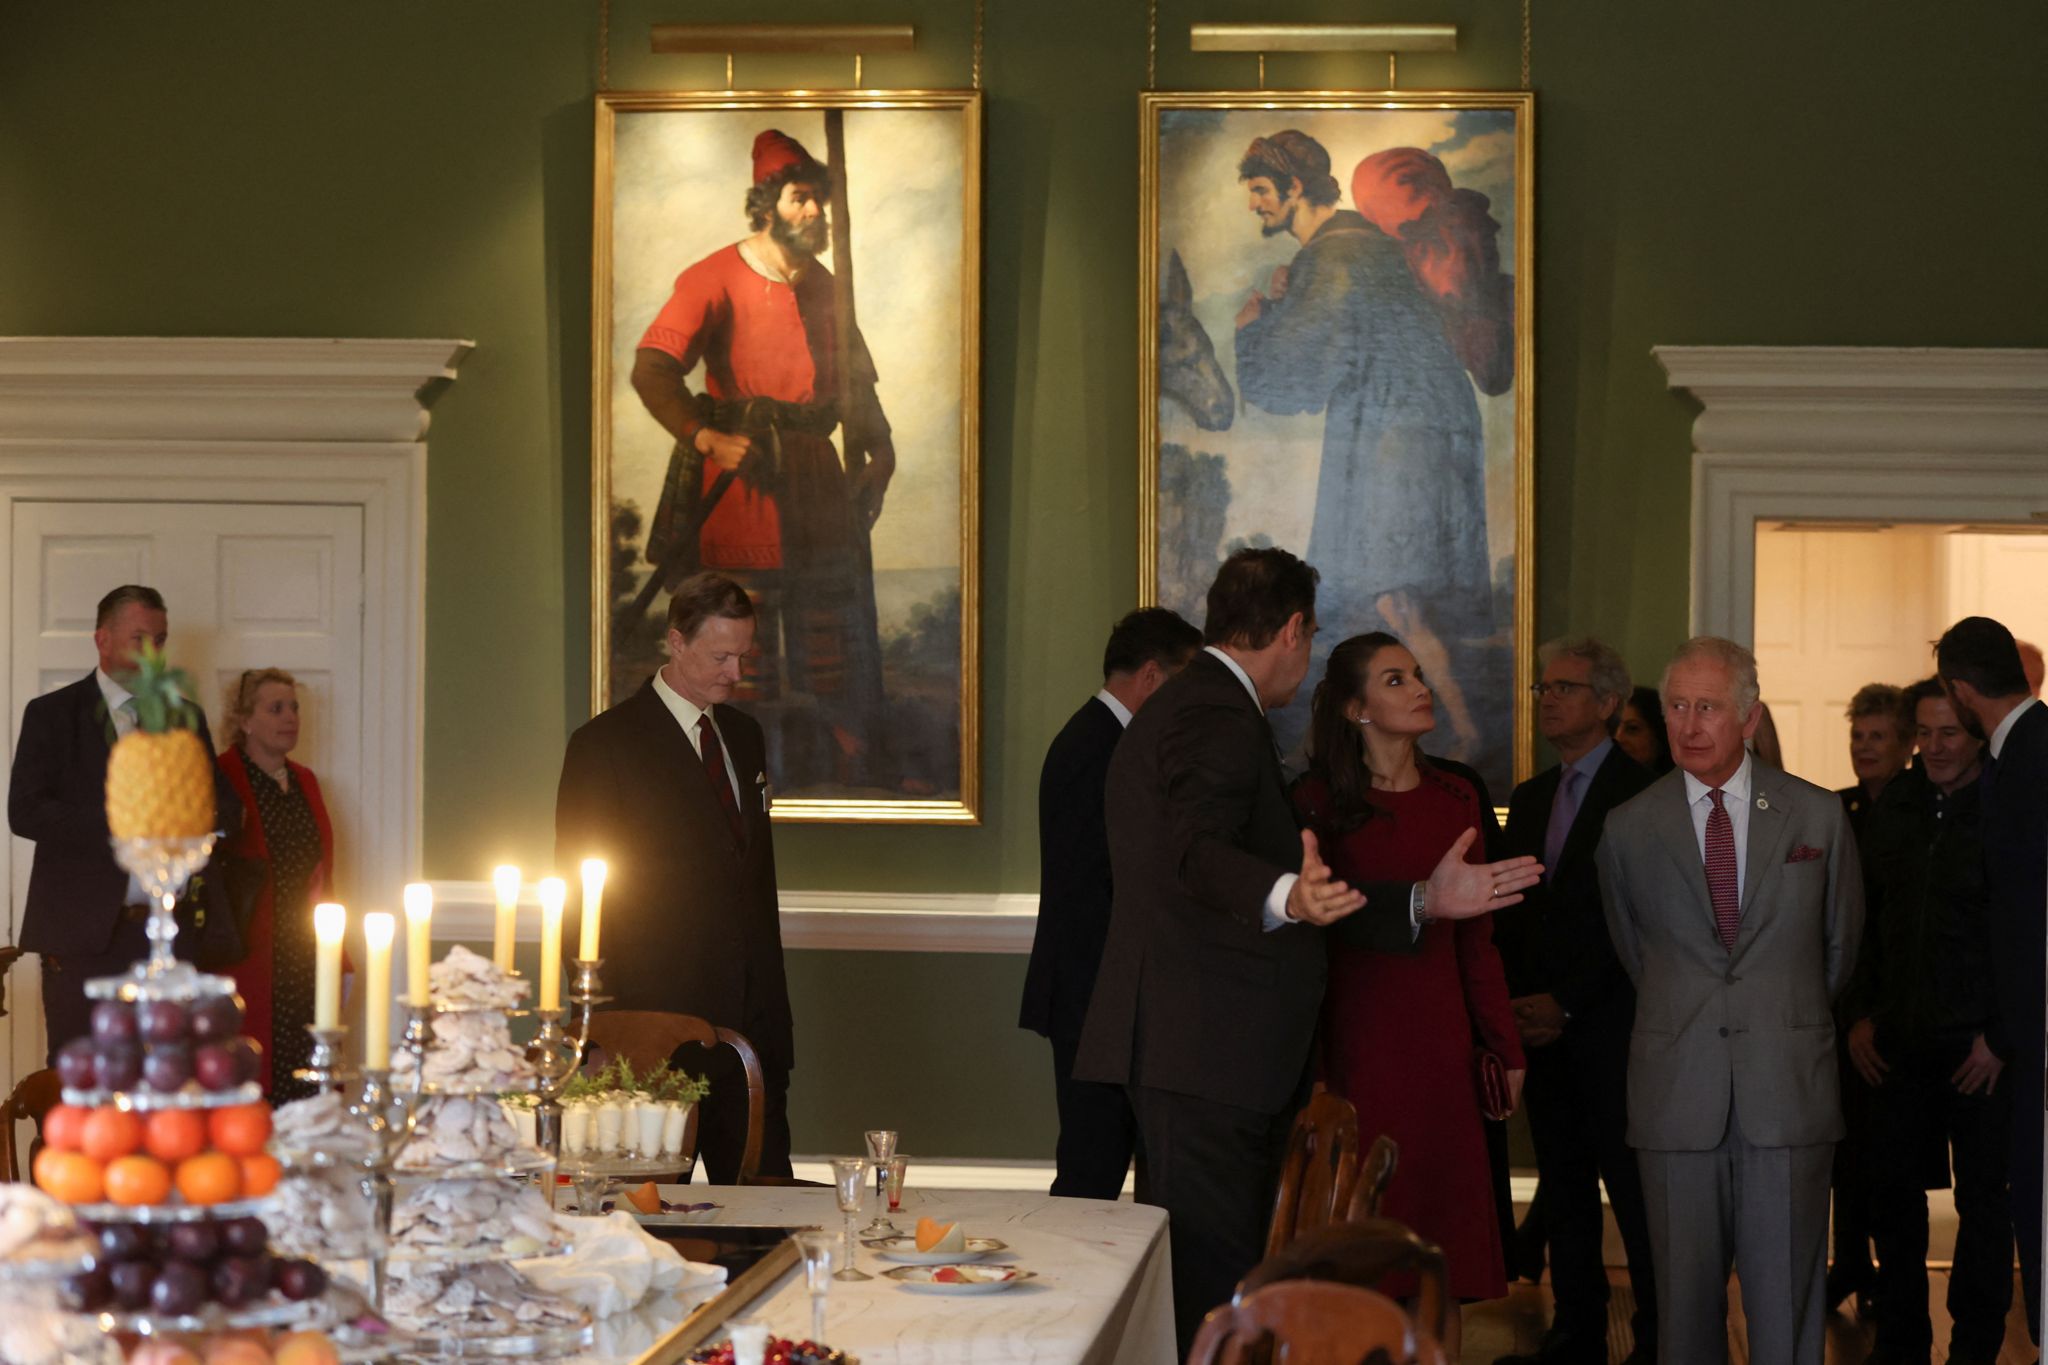 Queen Letizia of Spain views the Zurbaran art collection